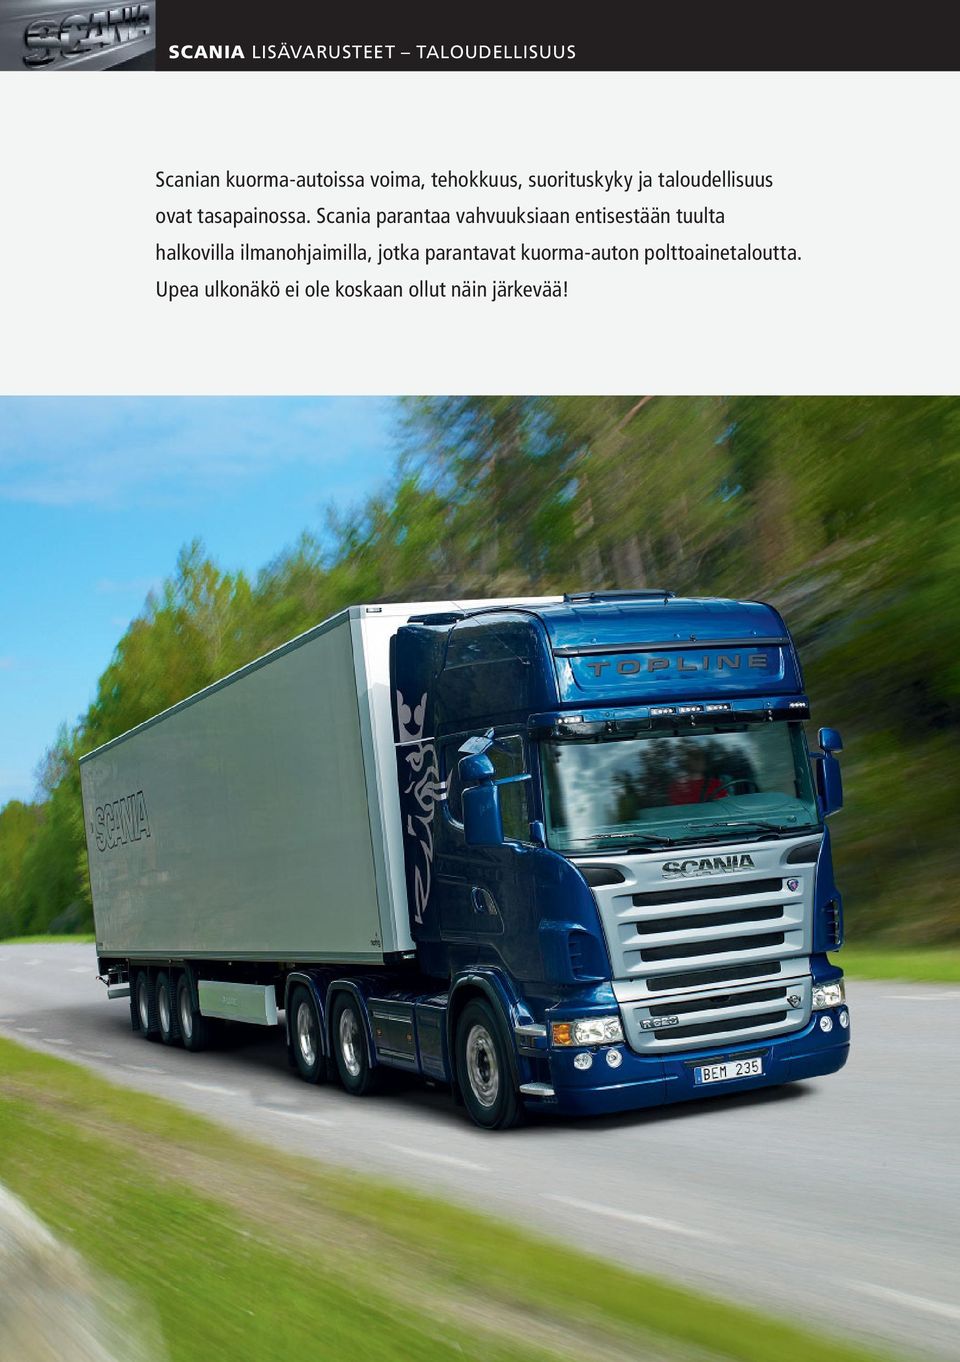 Scania parantaa vahvuuksiaan entisestään tuulta halkovilla ilmanohjaimilla,